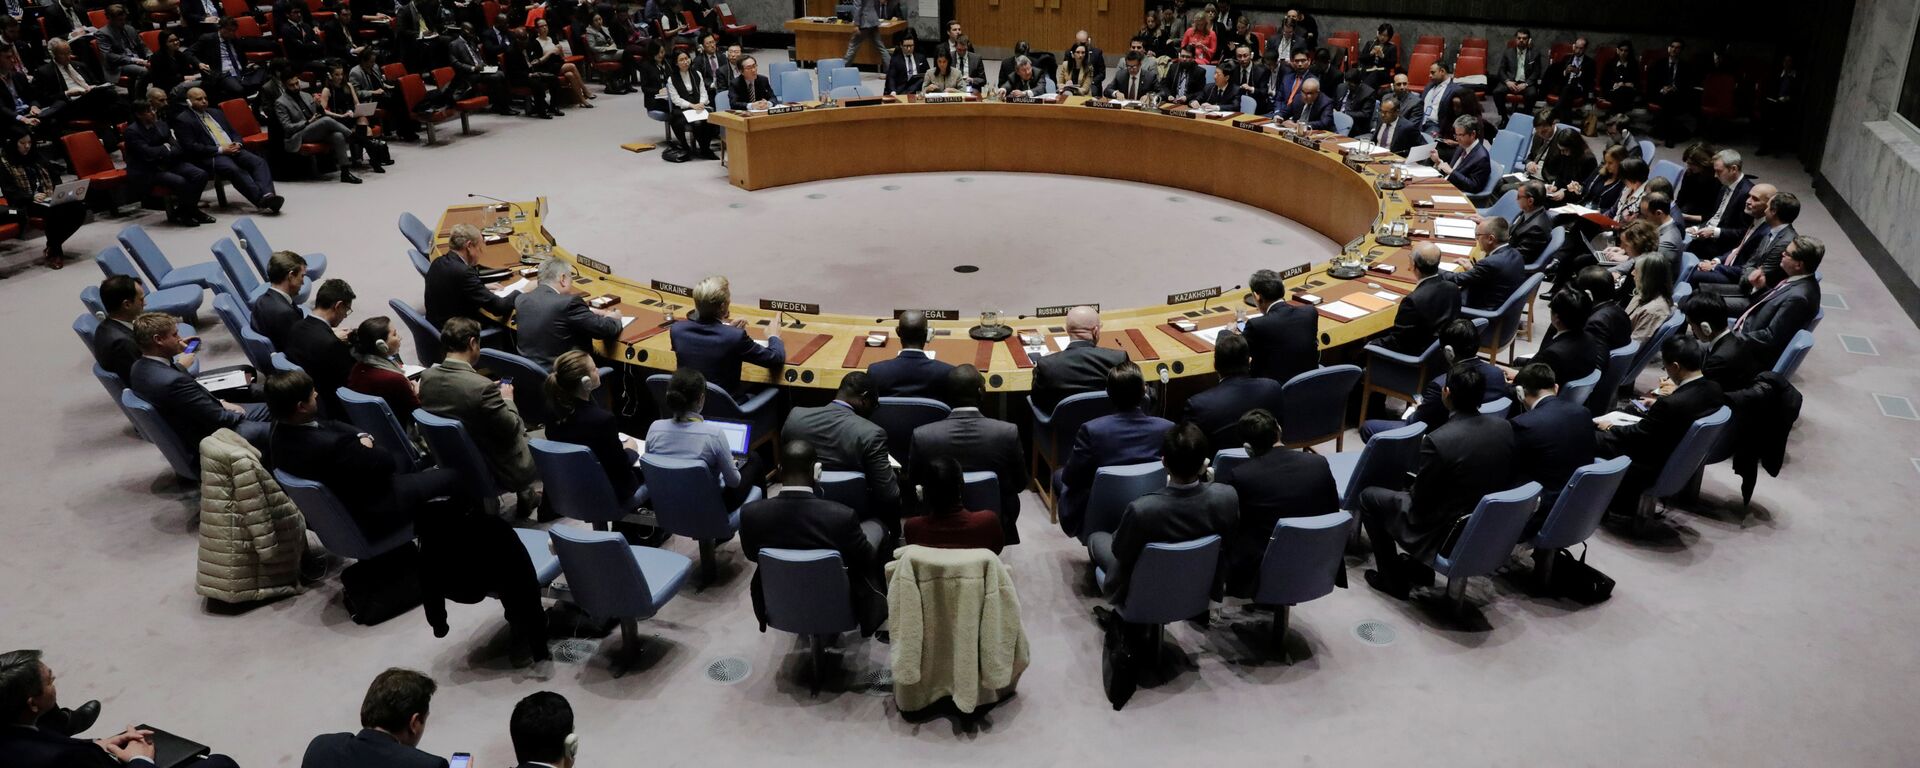 مجلس الأمن الدولي للأمم المتحدة، نيويورك، الولايات المتحدة 29 نوفمبر/ تشرين الثاني 2017 - سبوتنيك عربي, 1920, 24.11.2021